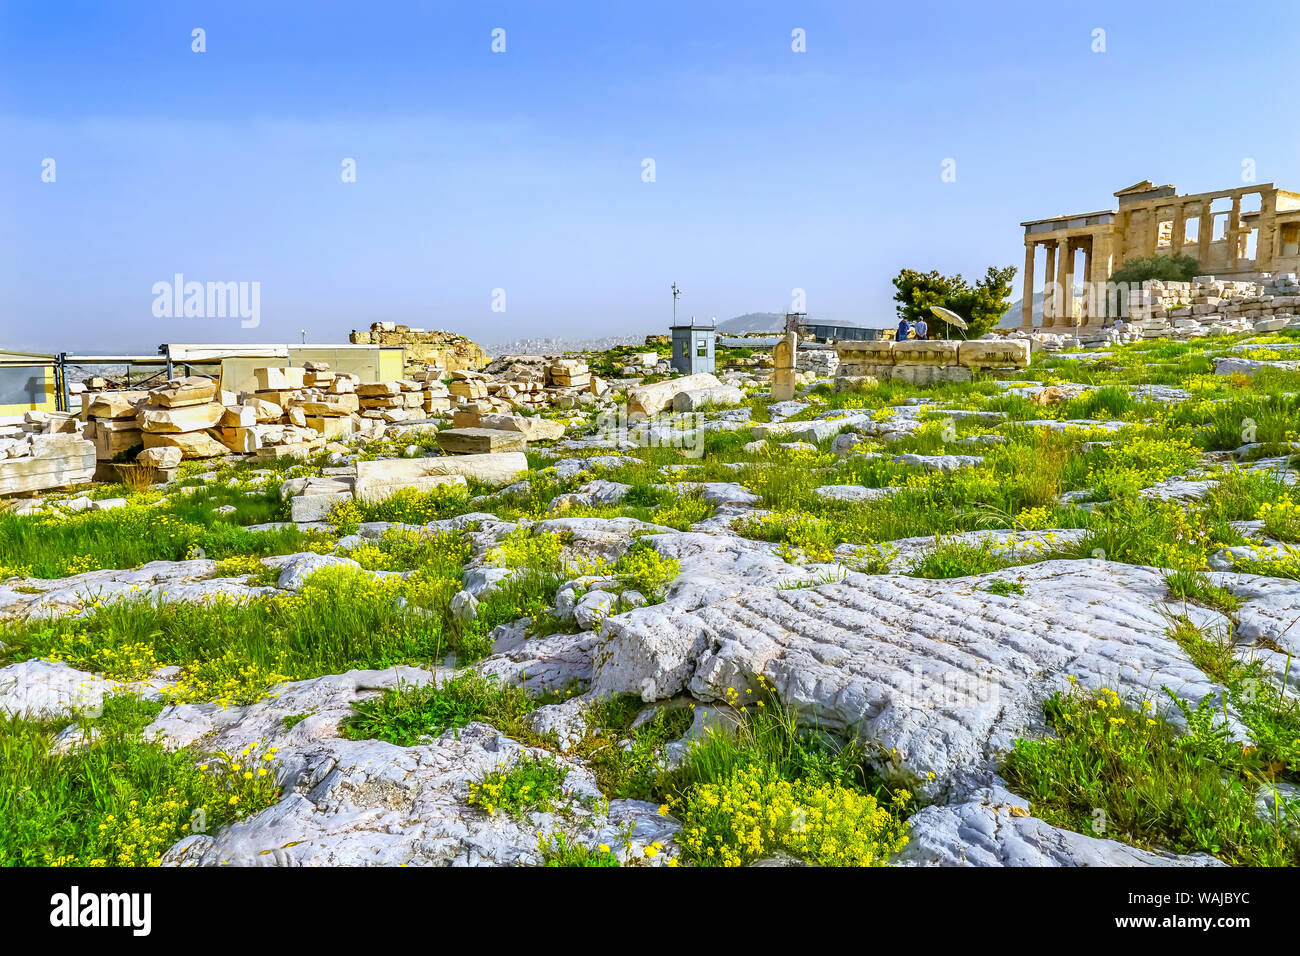 Temple of Erechtheion, Acropolis, Athens, Greece. Stock Photo